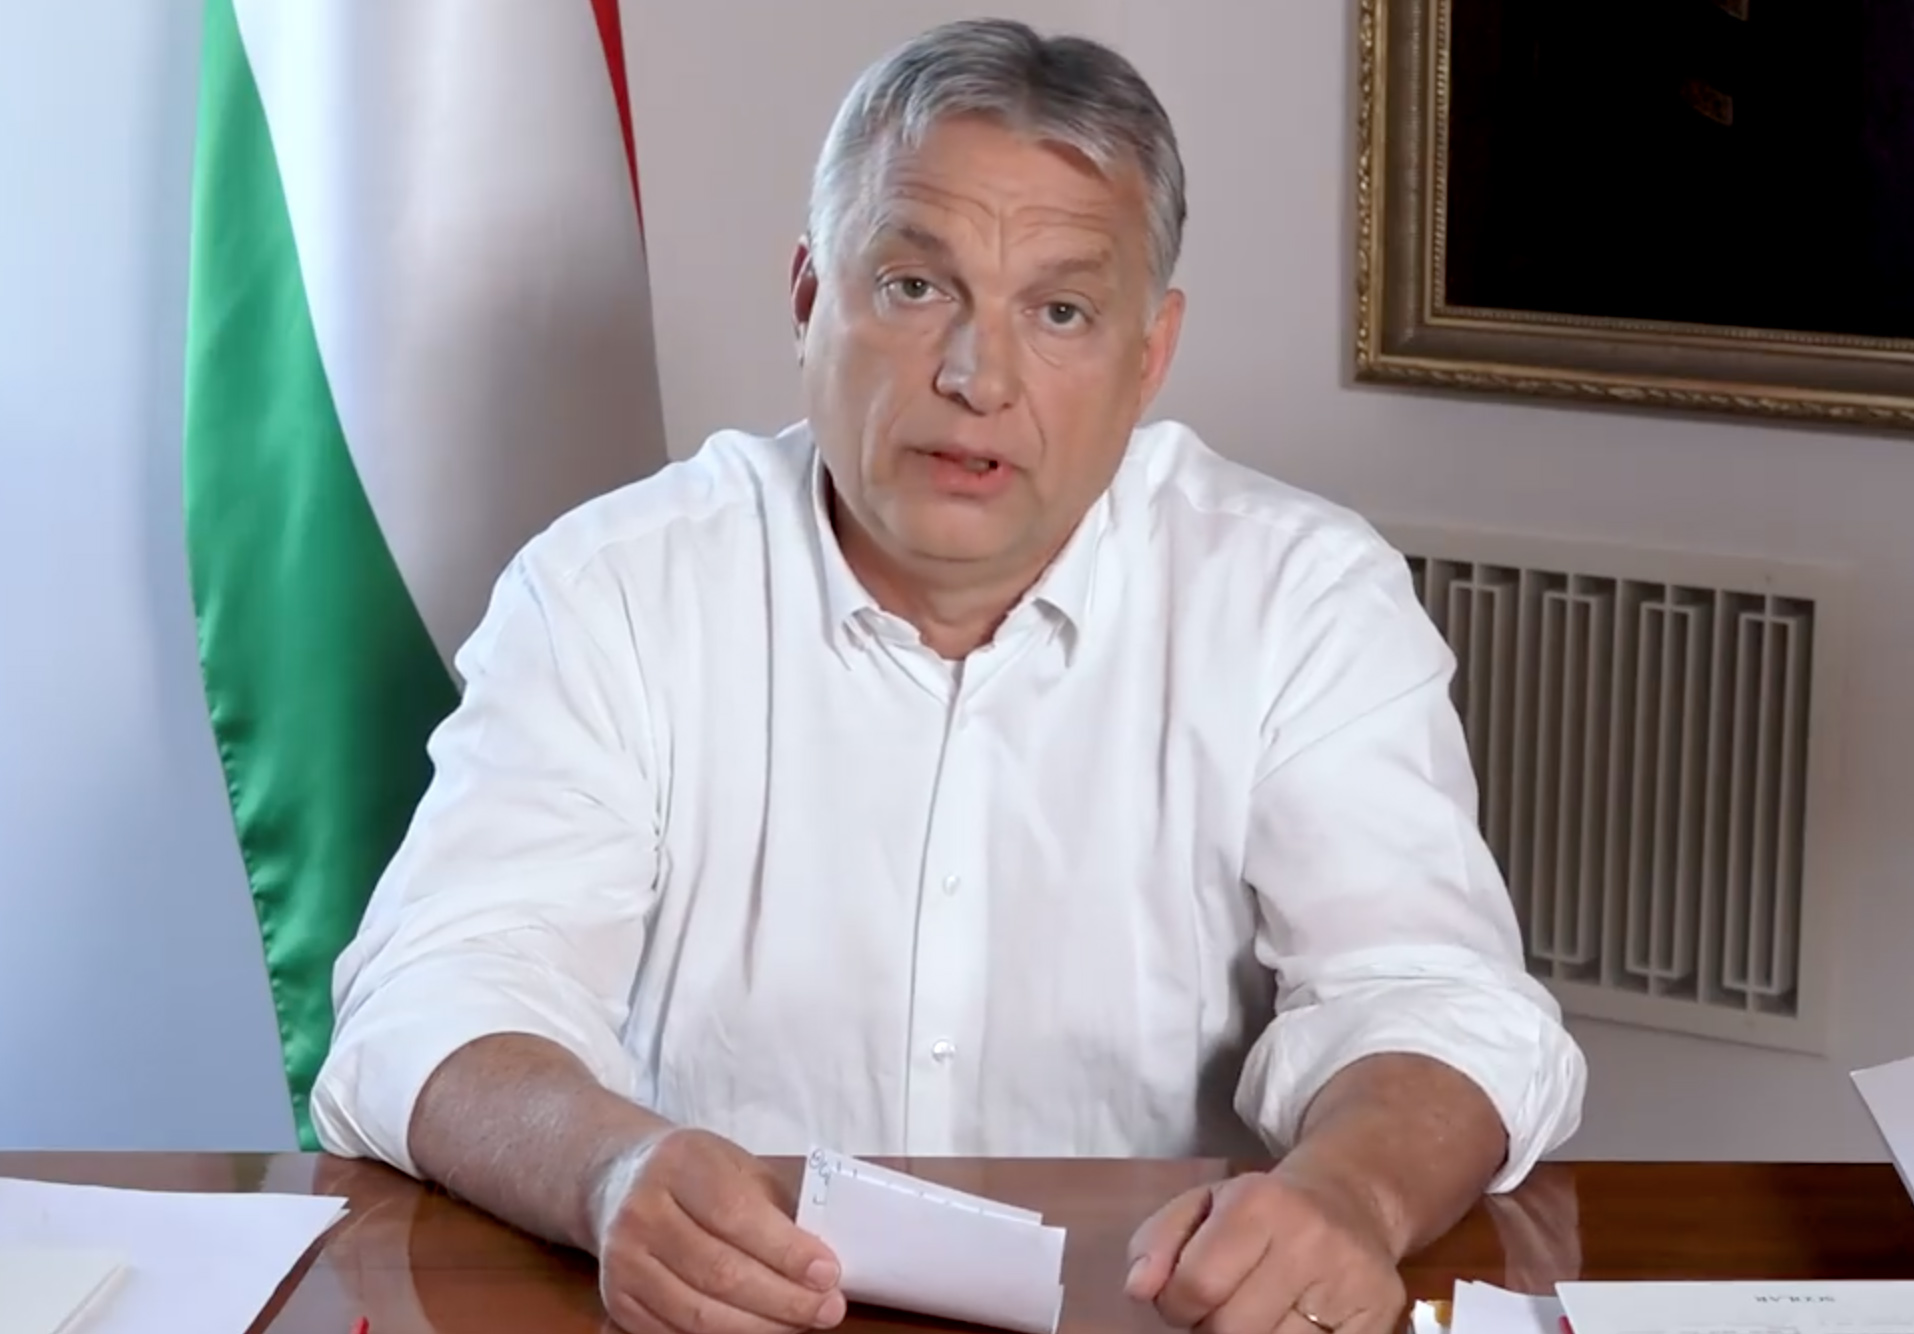 Bekeményít az EP: nem engedik, hogy Orbán Varga Juditot küldje maga helyett